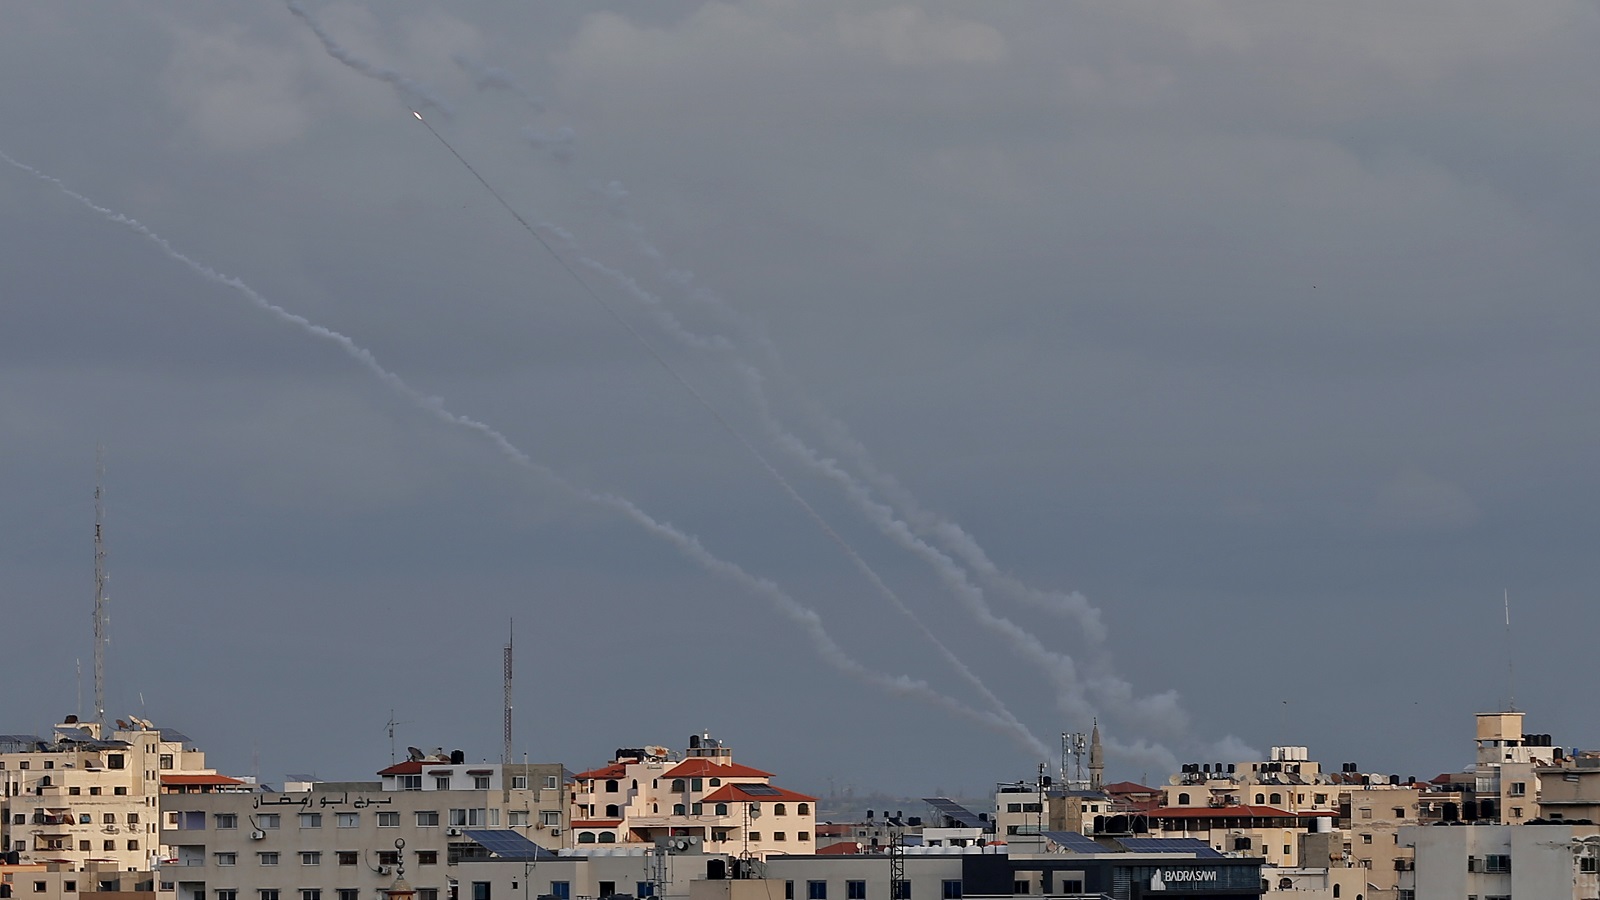 إسرائيل_غزة:إنتهت الضربات المتبادلة..لكن الحرب واردة